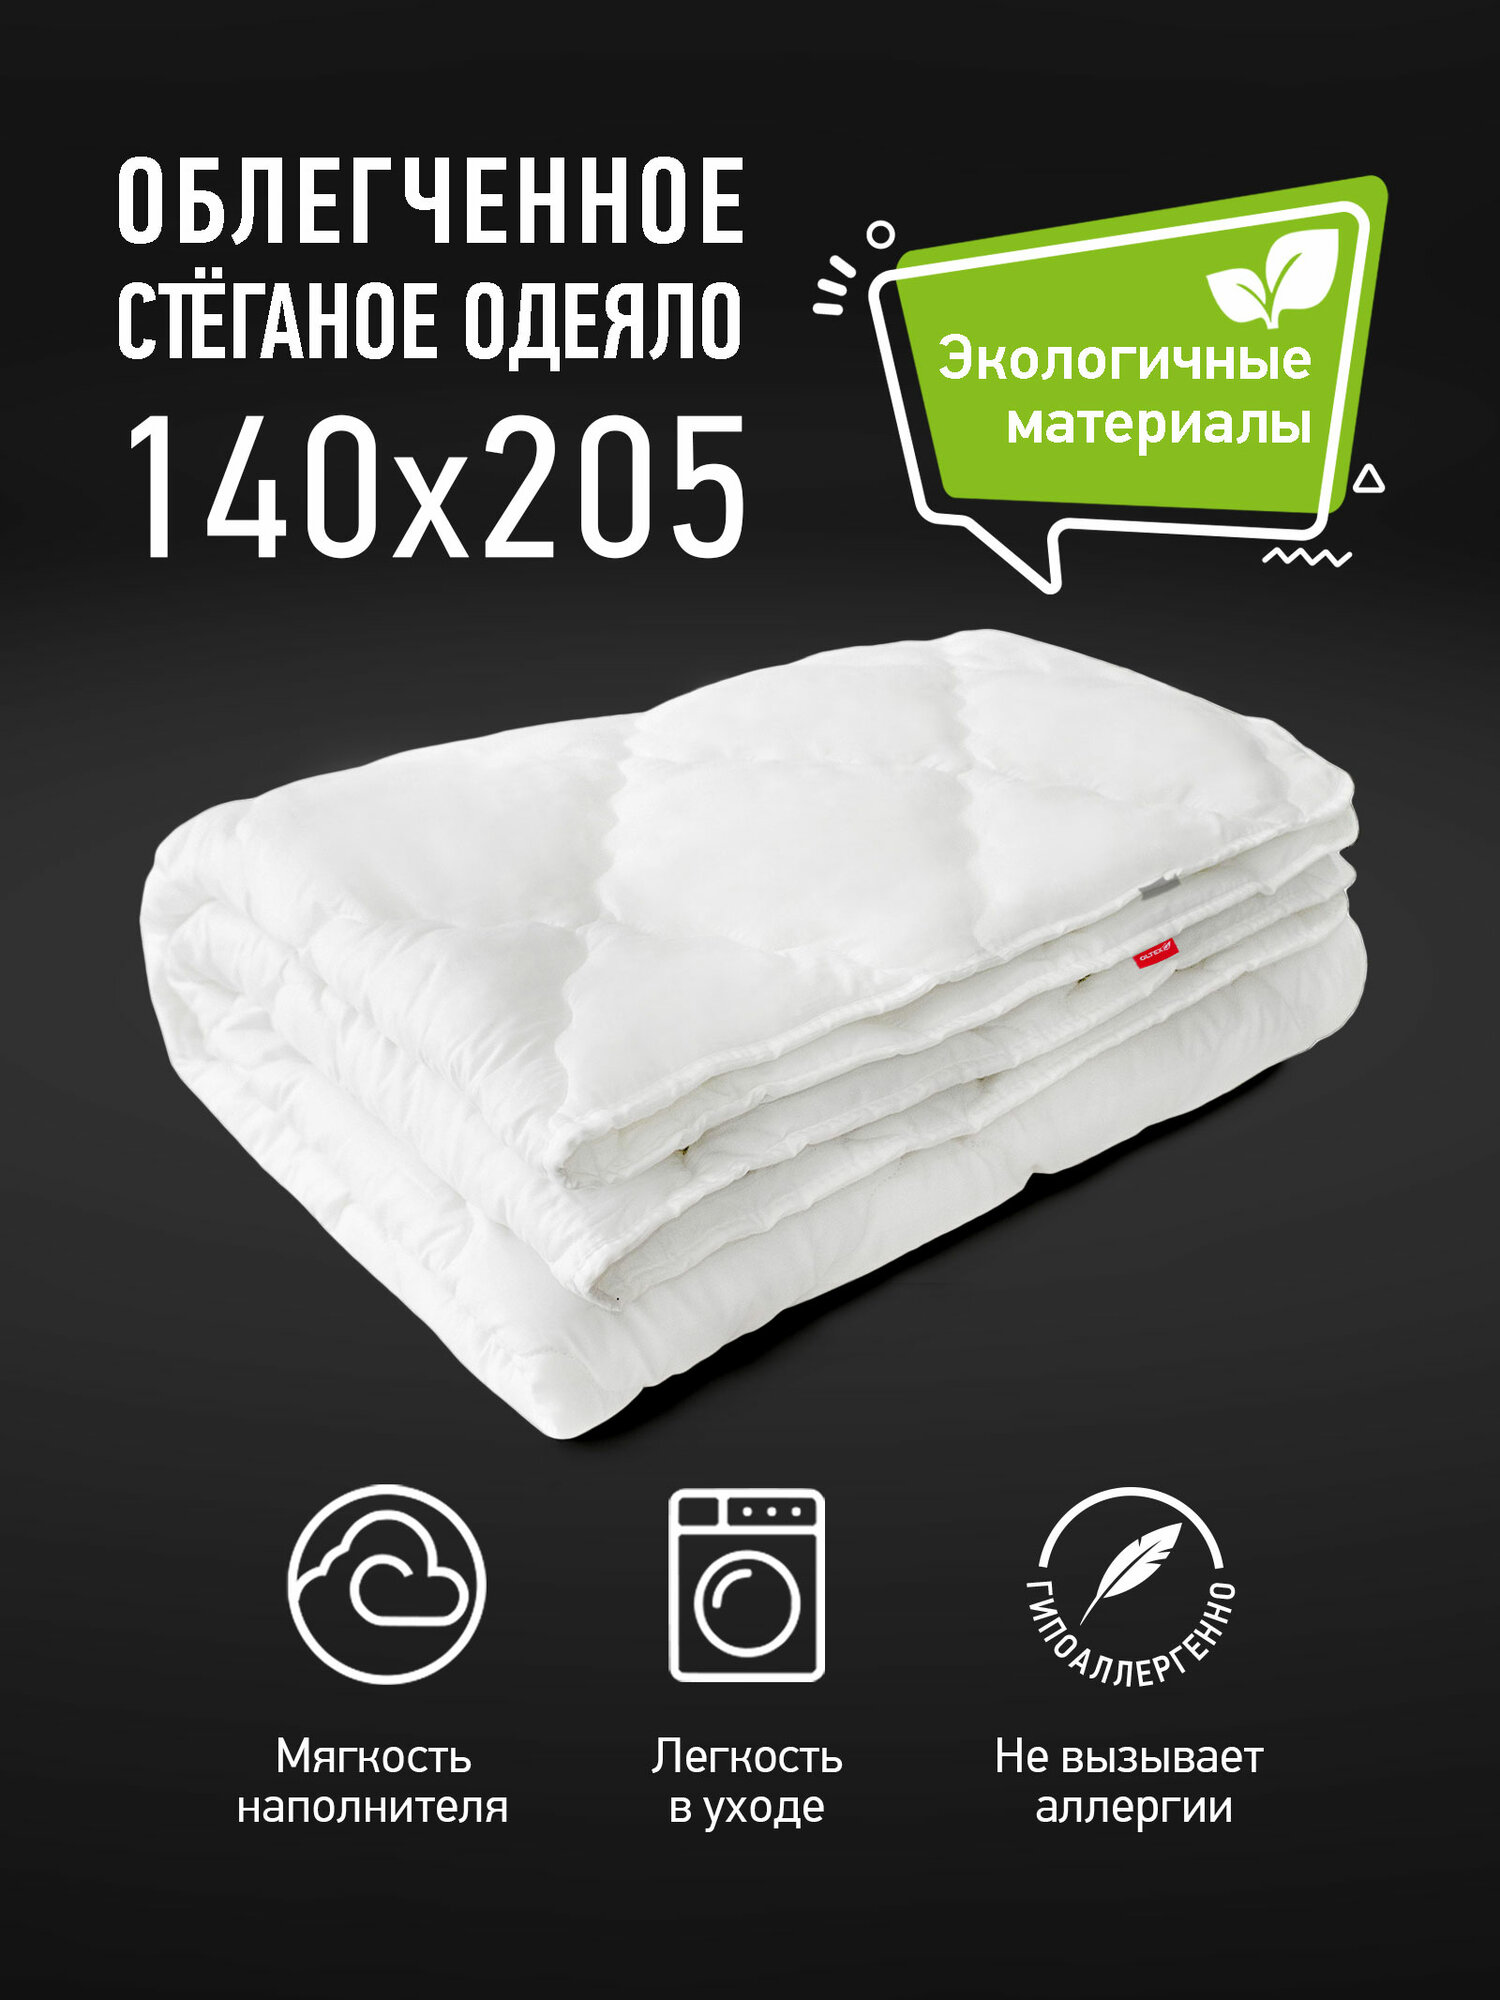 Одеяло детское OL-TEX Марсель 140x205 всесезонное / 1,5 спальное детское одеяло OL-TEX / Одеяло для ребенка с наполнителем Искусственный пух